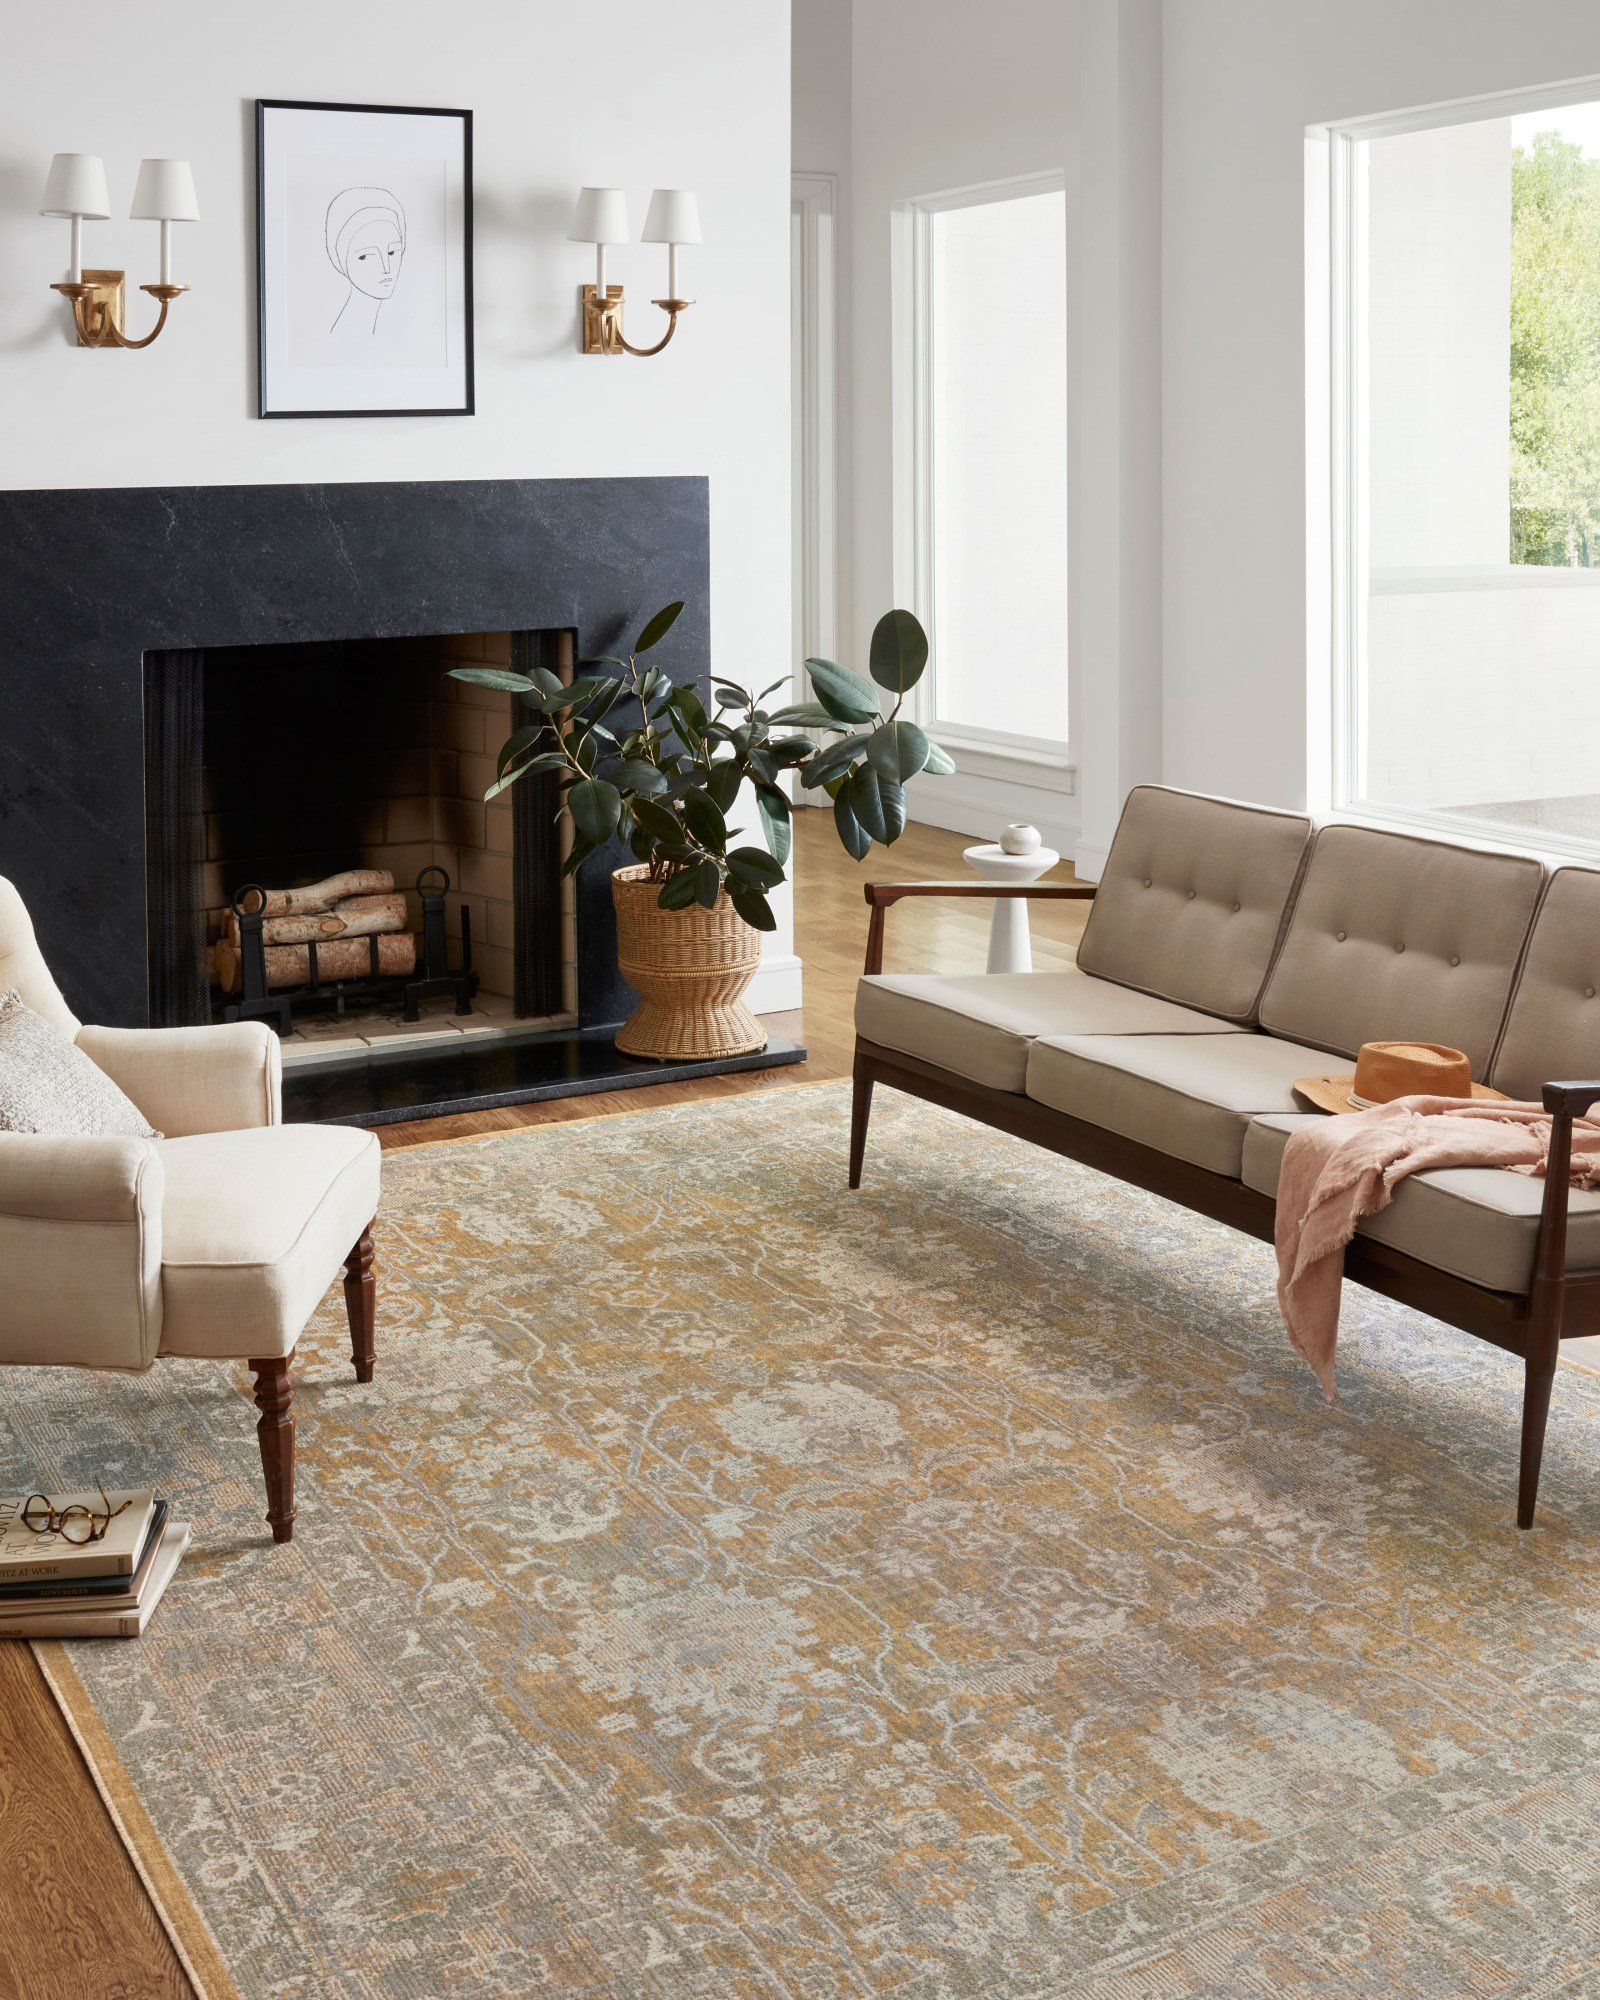 Large Area Rugs Vintage Rose Modern Floor Carpet No-Shedding Non-Slip Indoor Rug Home Décor 5' x 3'2 